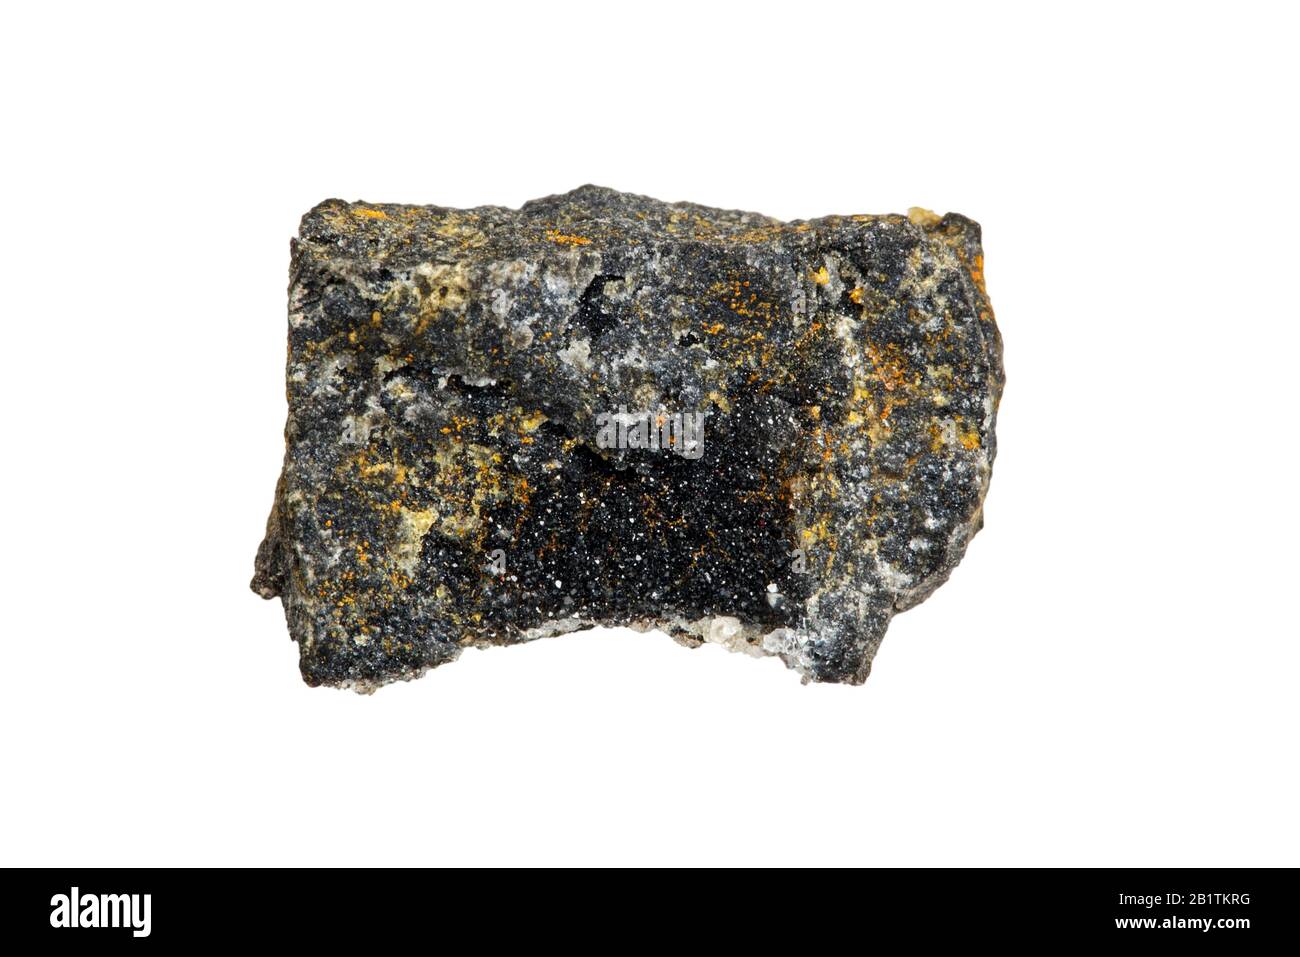 Galena / lead glance, forma minerale naturale di solfuro di piombo, trovato in Plombières, Belgio su sfondo bianco Foto Stock